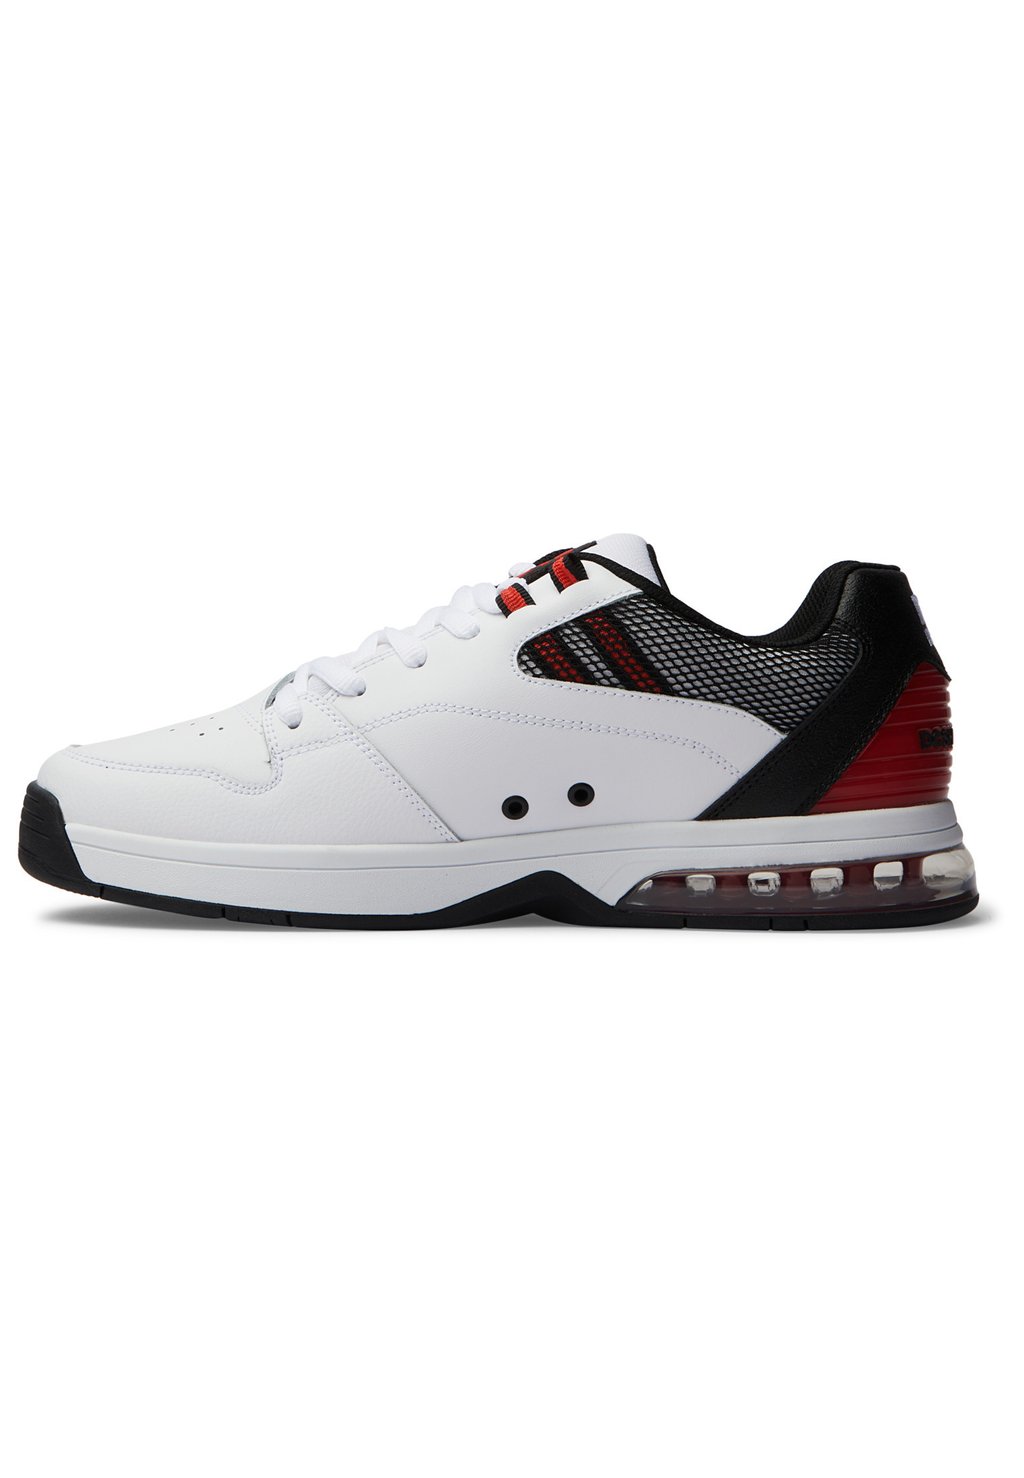 Кроссовки низкие VERSATILE DC Shoes, цвет xwkr white black red низкие кроссовки crisis 2 dc shoes цвет black white